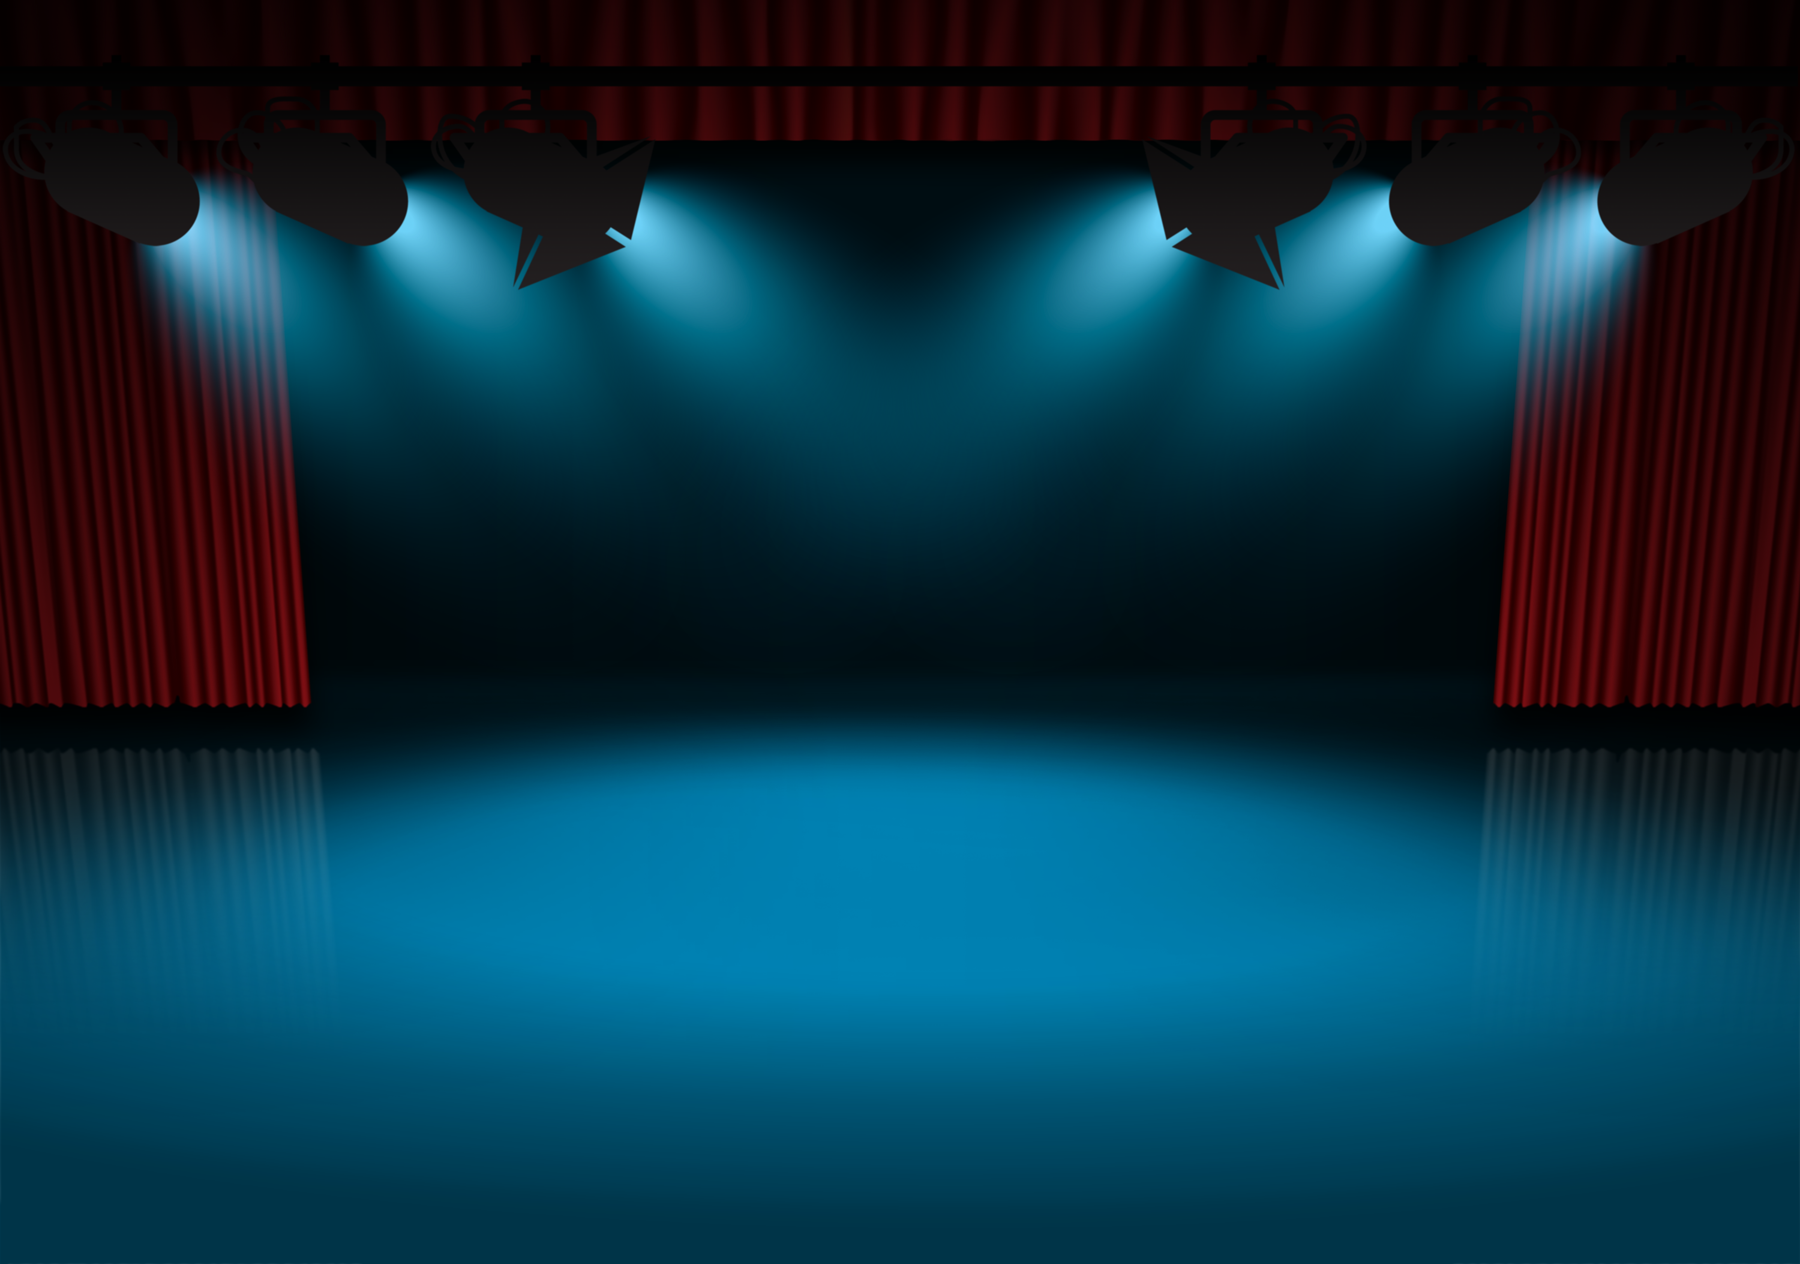 Stage Spotlight Desktop Wallpaper 18305 - Baltana